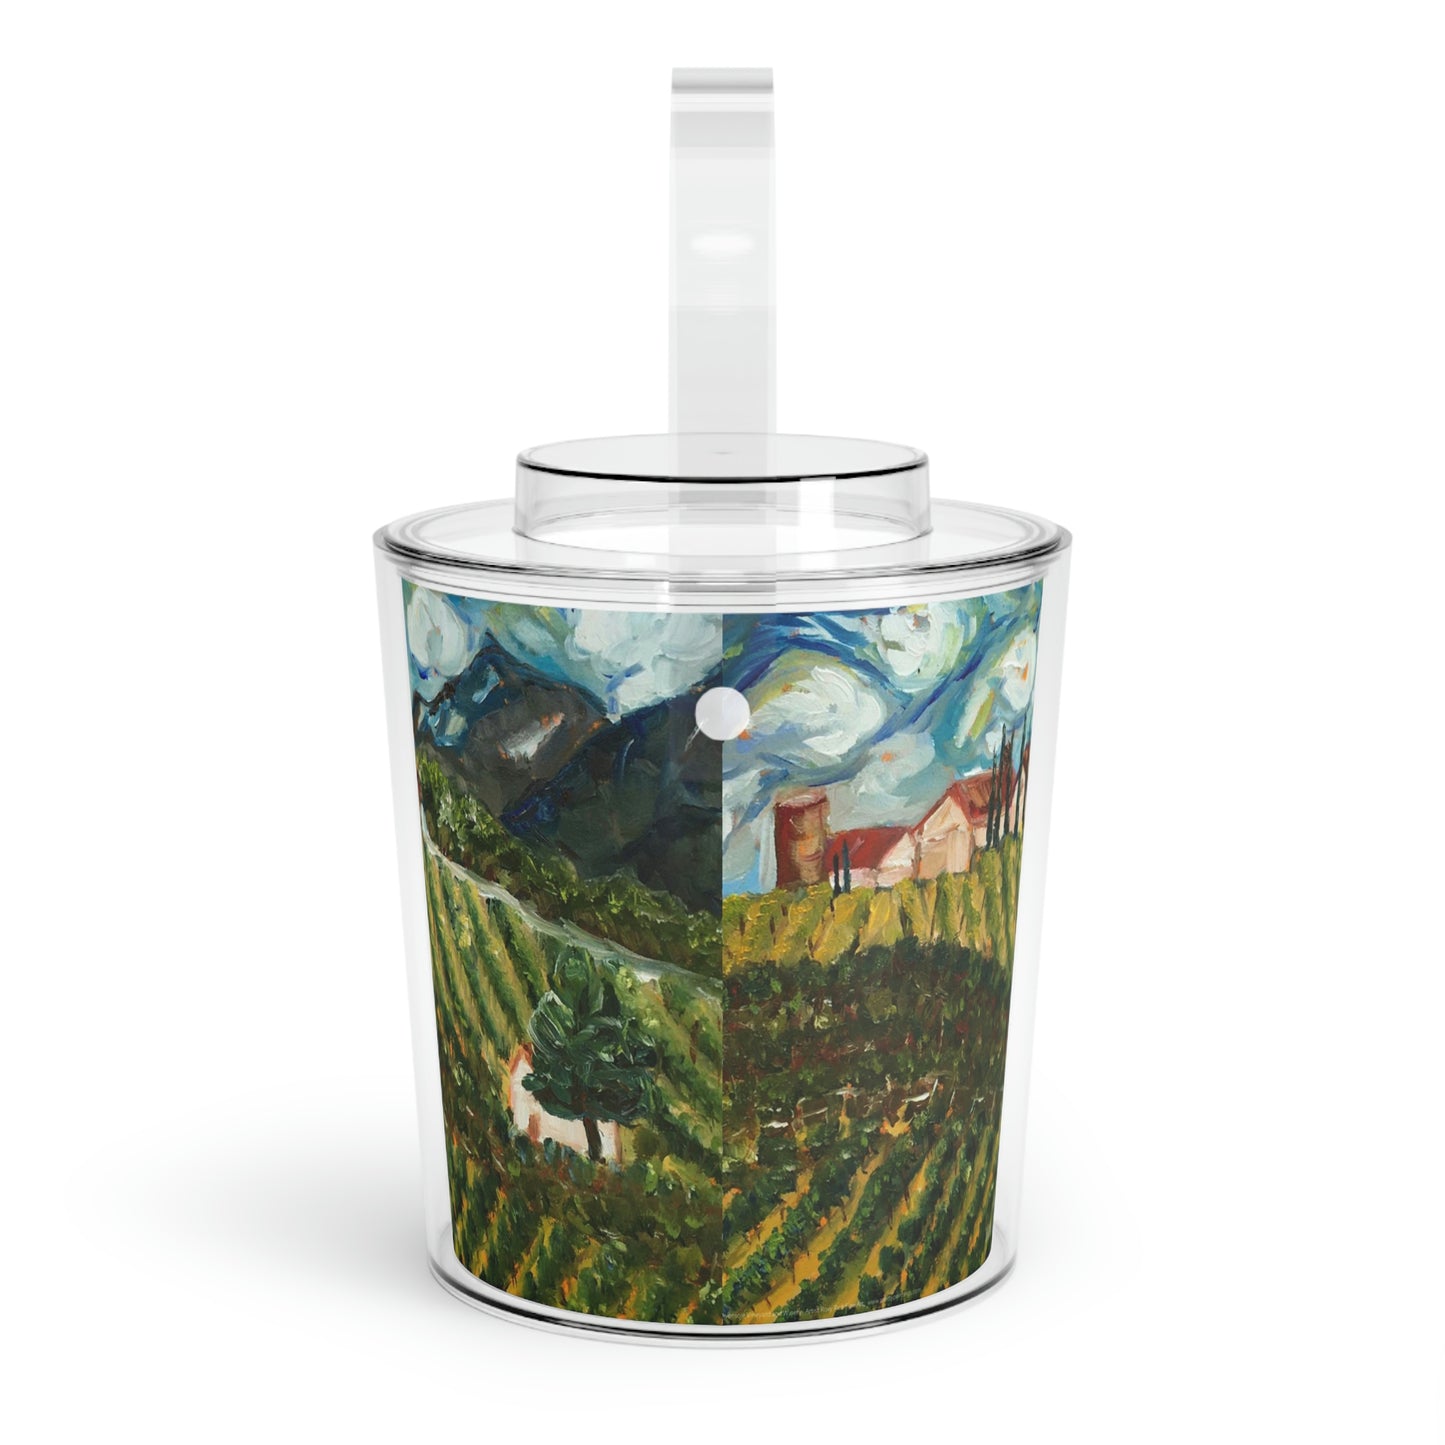 Avensole Vineyard and Winery (Temecula) Landscape Ice Bucket